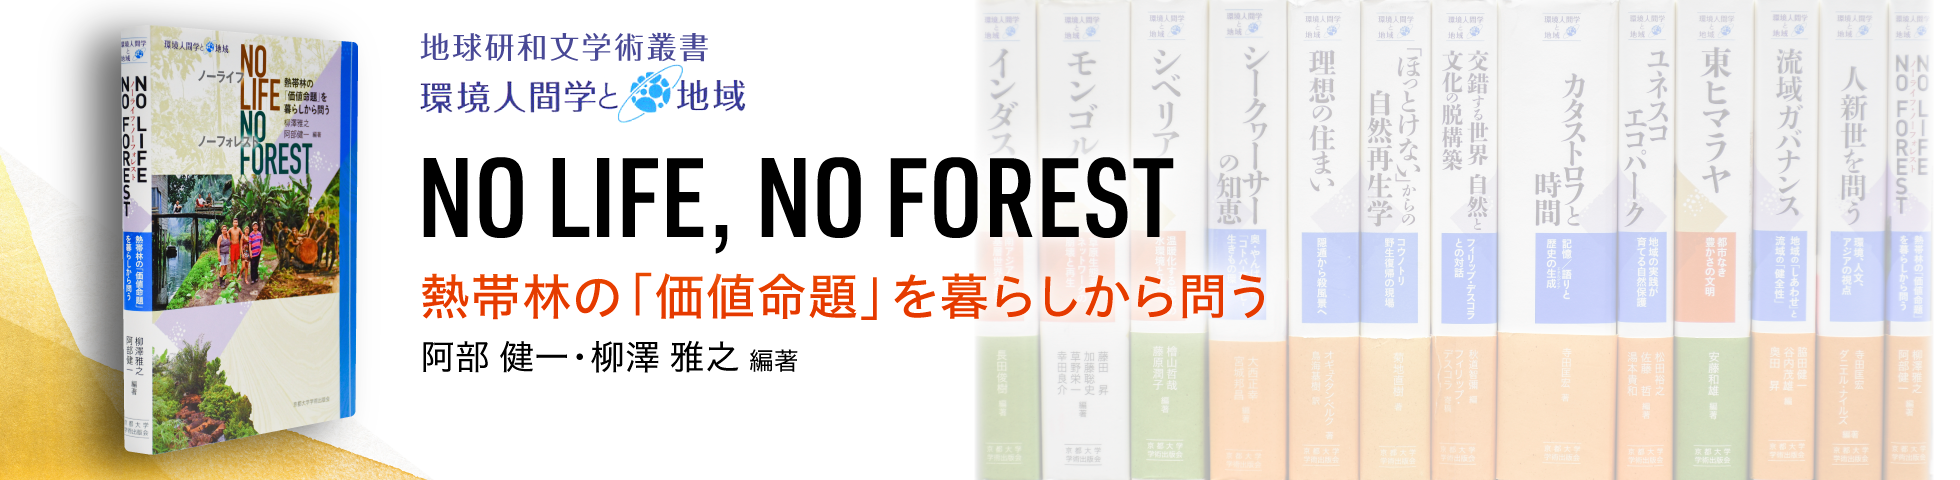 地球研和文学術叢書「No Life, No Forest 熱帯林の「価値命題」を暮らしから問う」